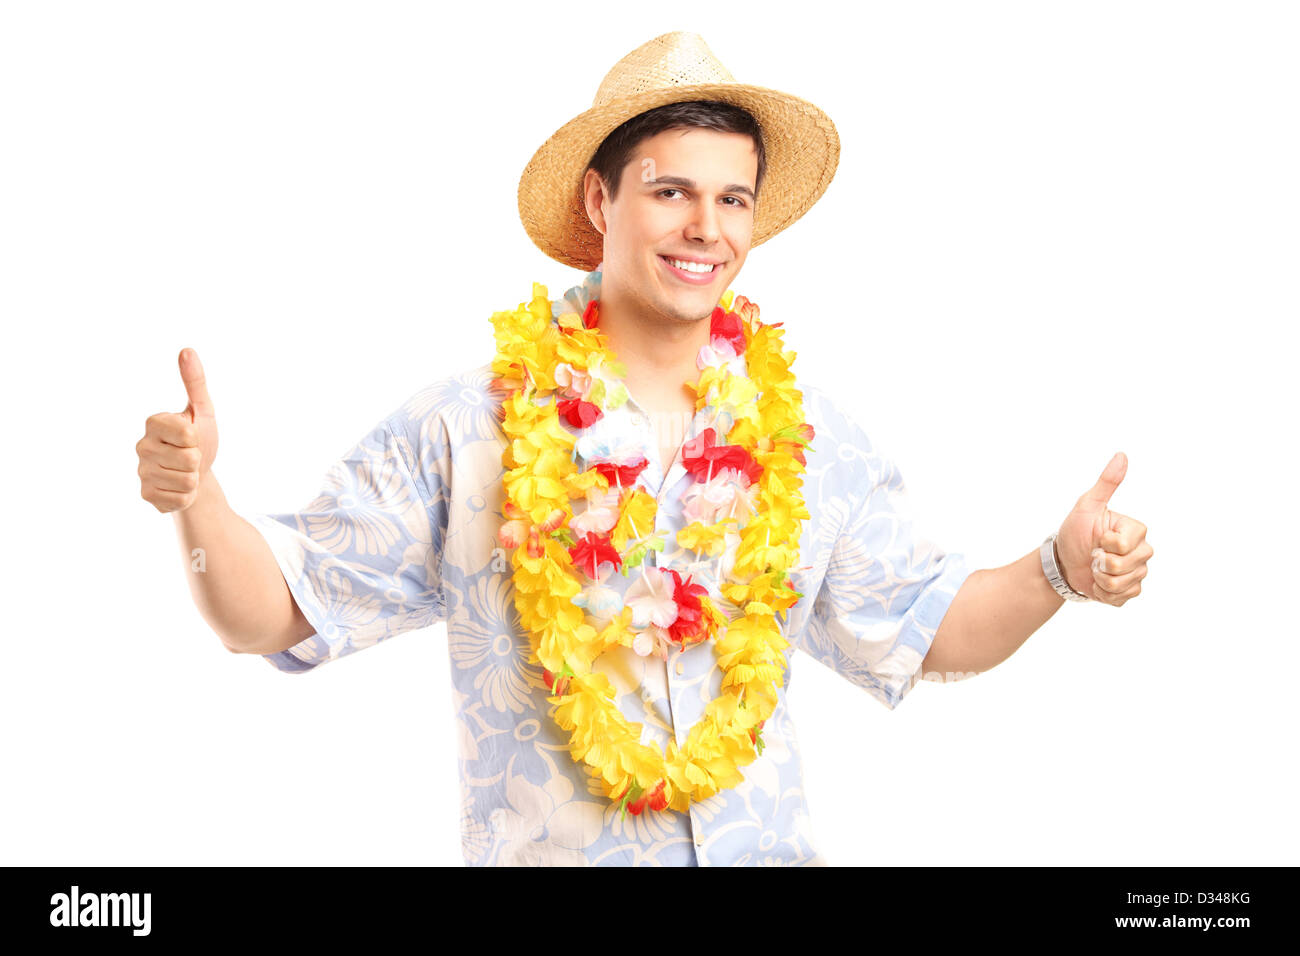 Costume hawaiano immagini e fotografie stock ad alta risoluzione - Alamy